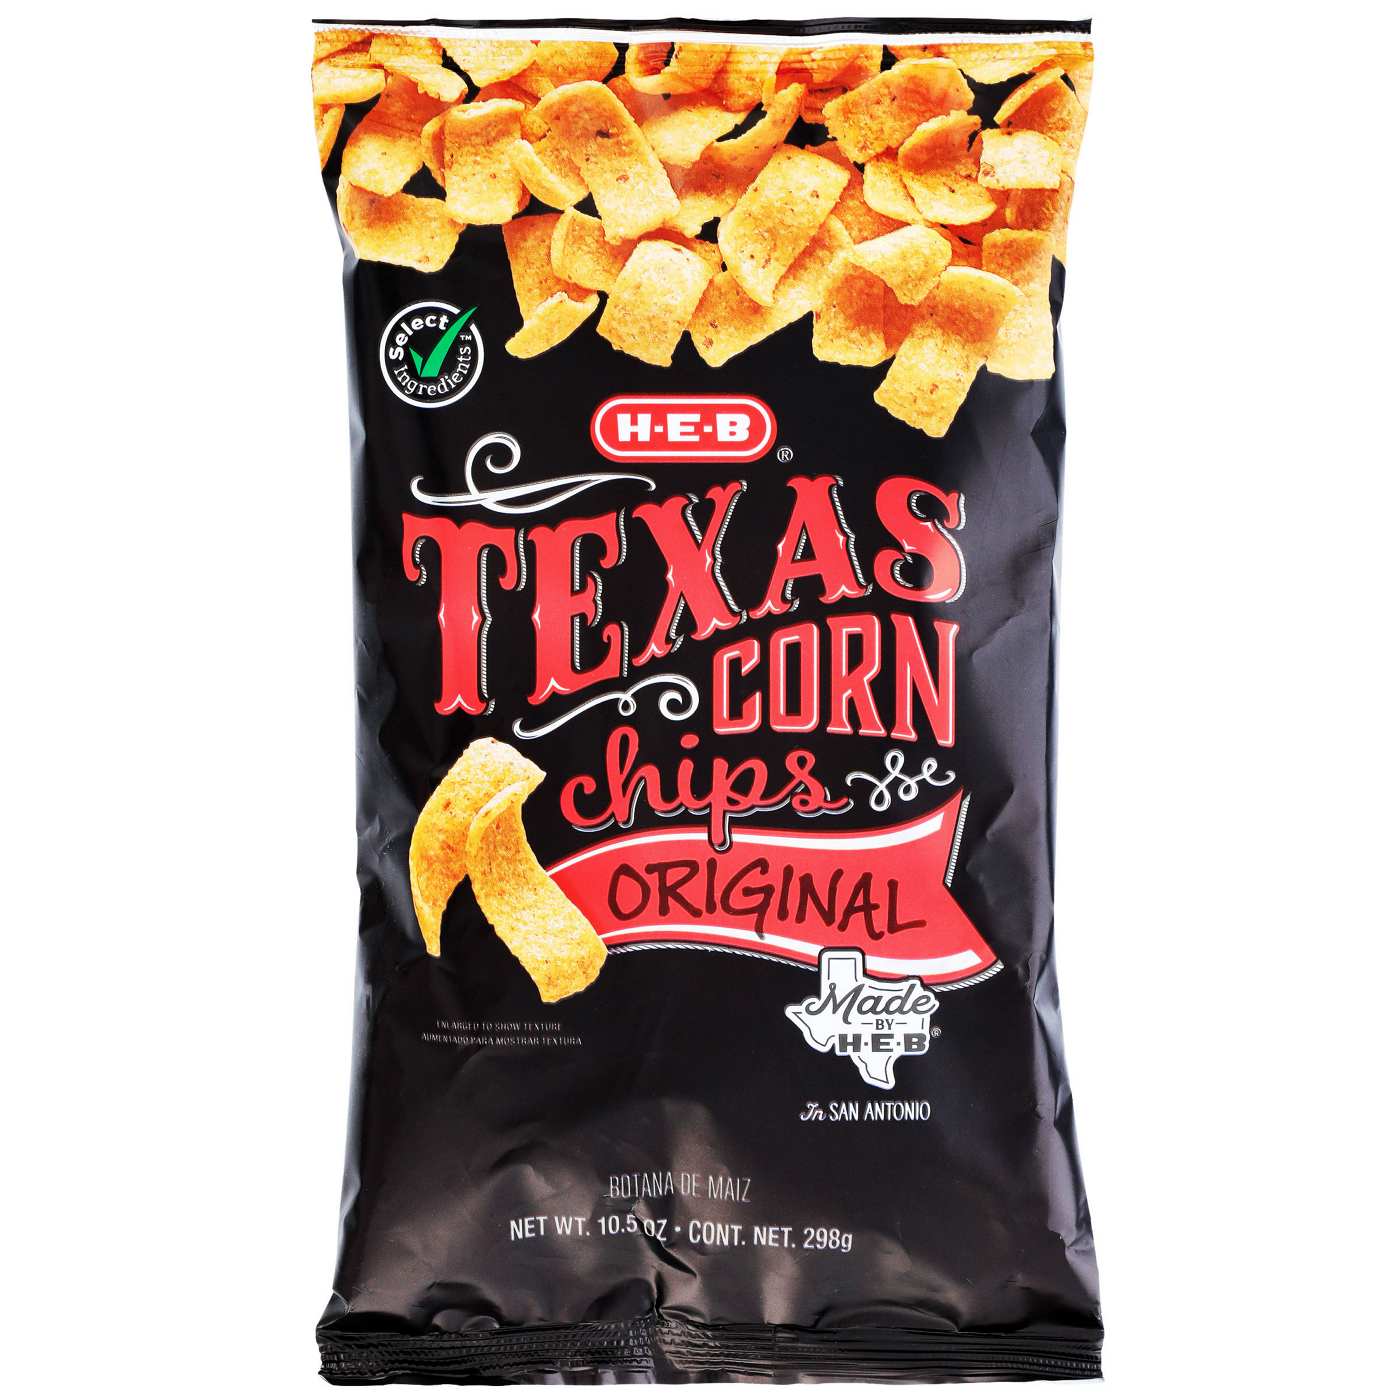 H-E-B Texas Corn Chips - Original; image 1 of 2